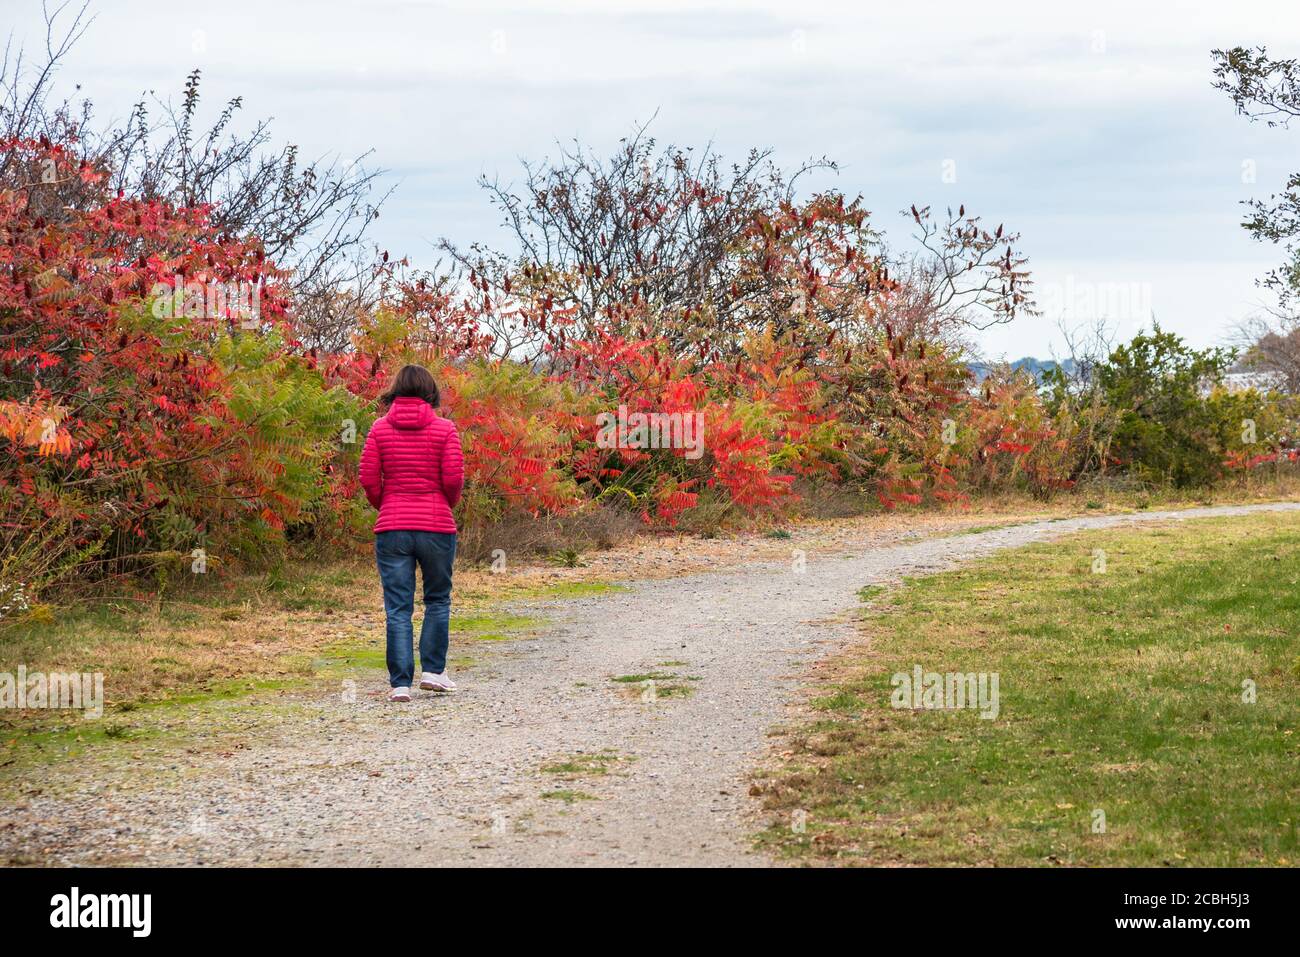 Einsame Frau, die an einem bewölkten Herbsttag auf einem Schotterweg in einem öffentlichen Park spazieren geht. Herbstfarben. Konzept der Einsamkeit. Stockfoto